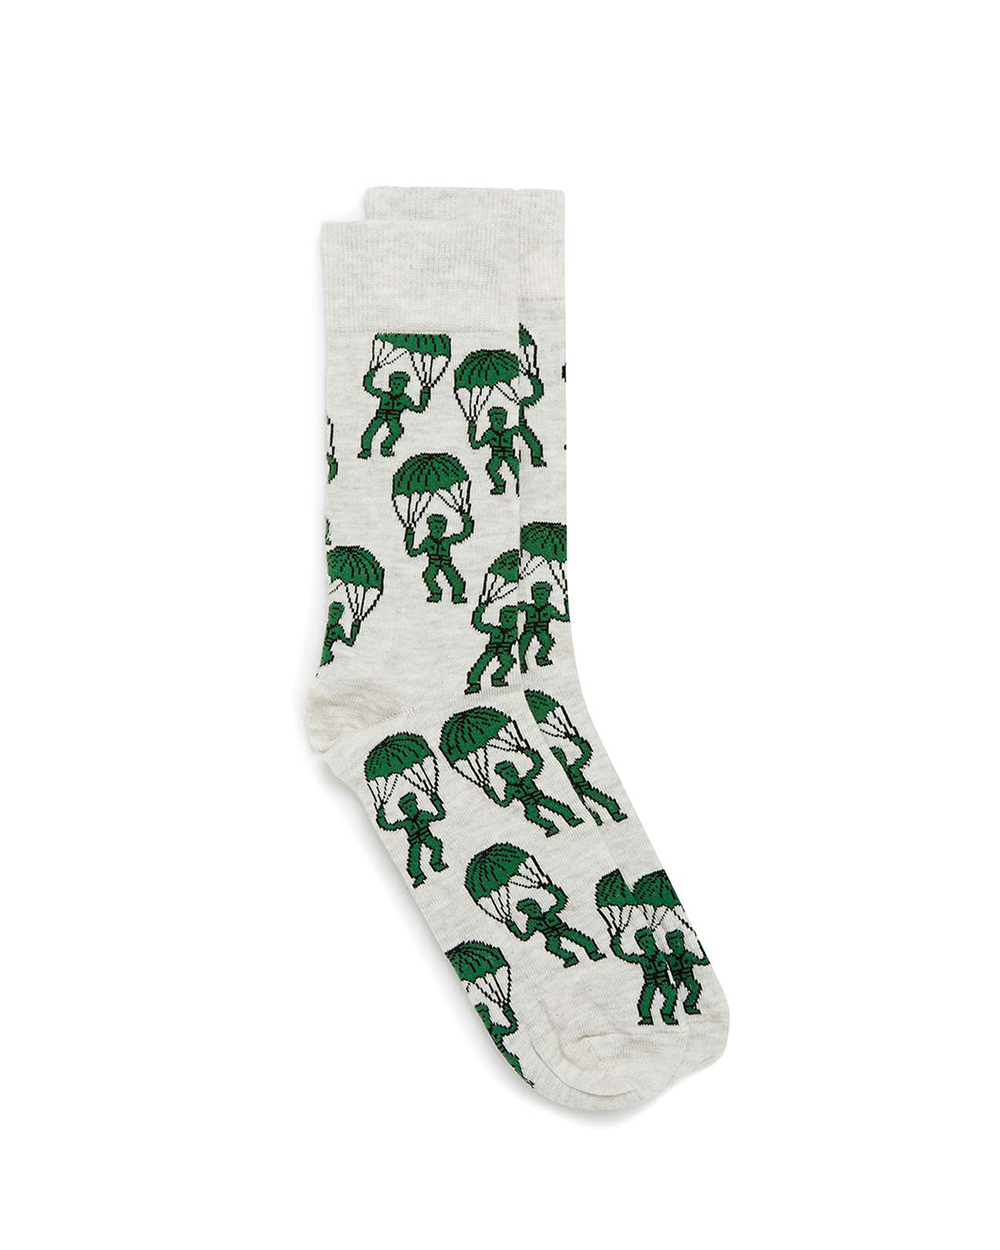 Topman socks, $7.